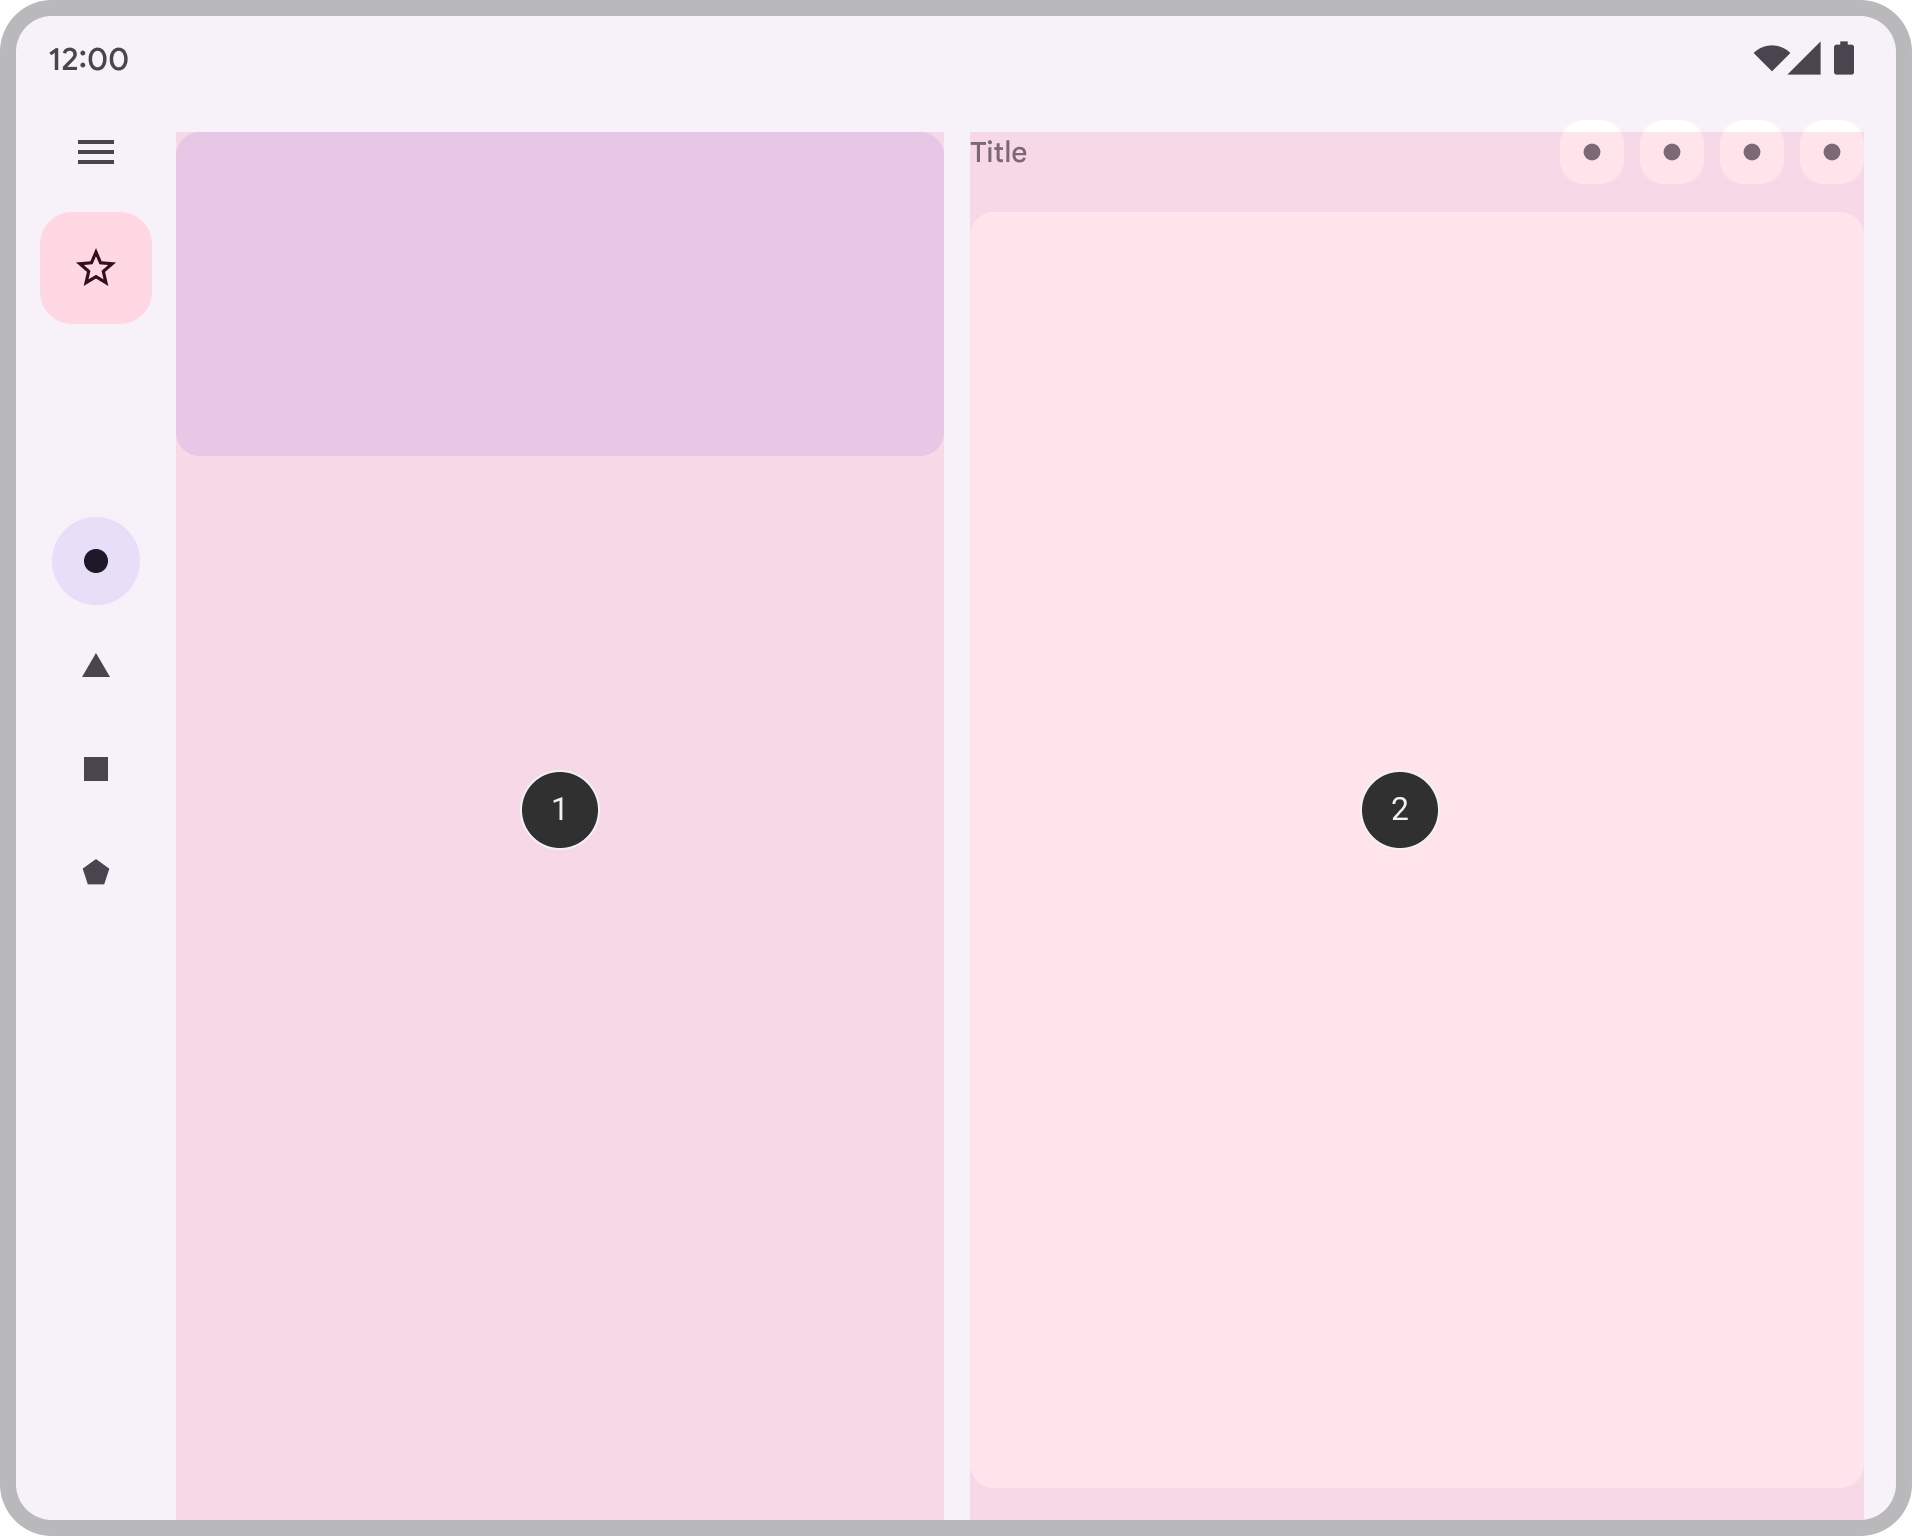 एक ऐप्लिकेशन का स्क्रीनशॉट, जिसमें एक साथ दो पैनल दिख रहे हैं.